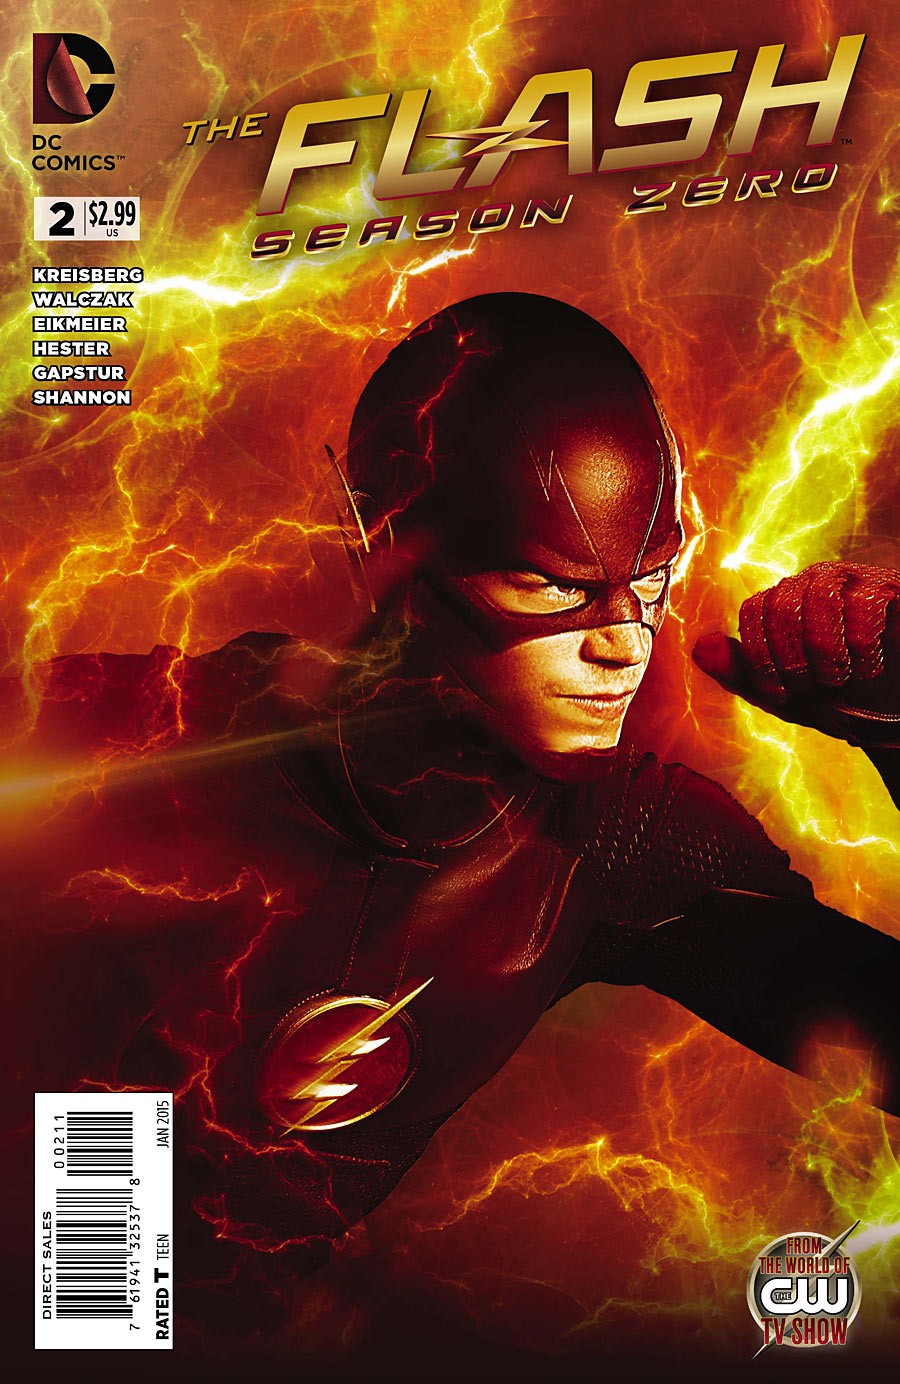 The Flash: Season Zero Vol. 1 #2